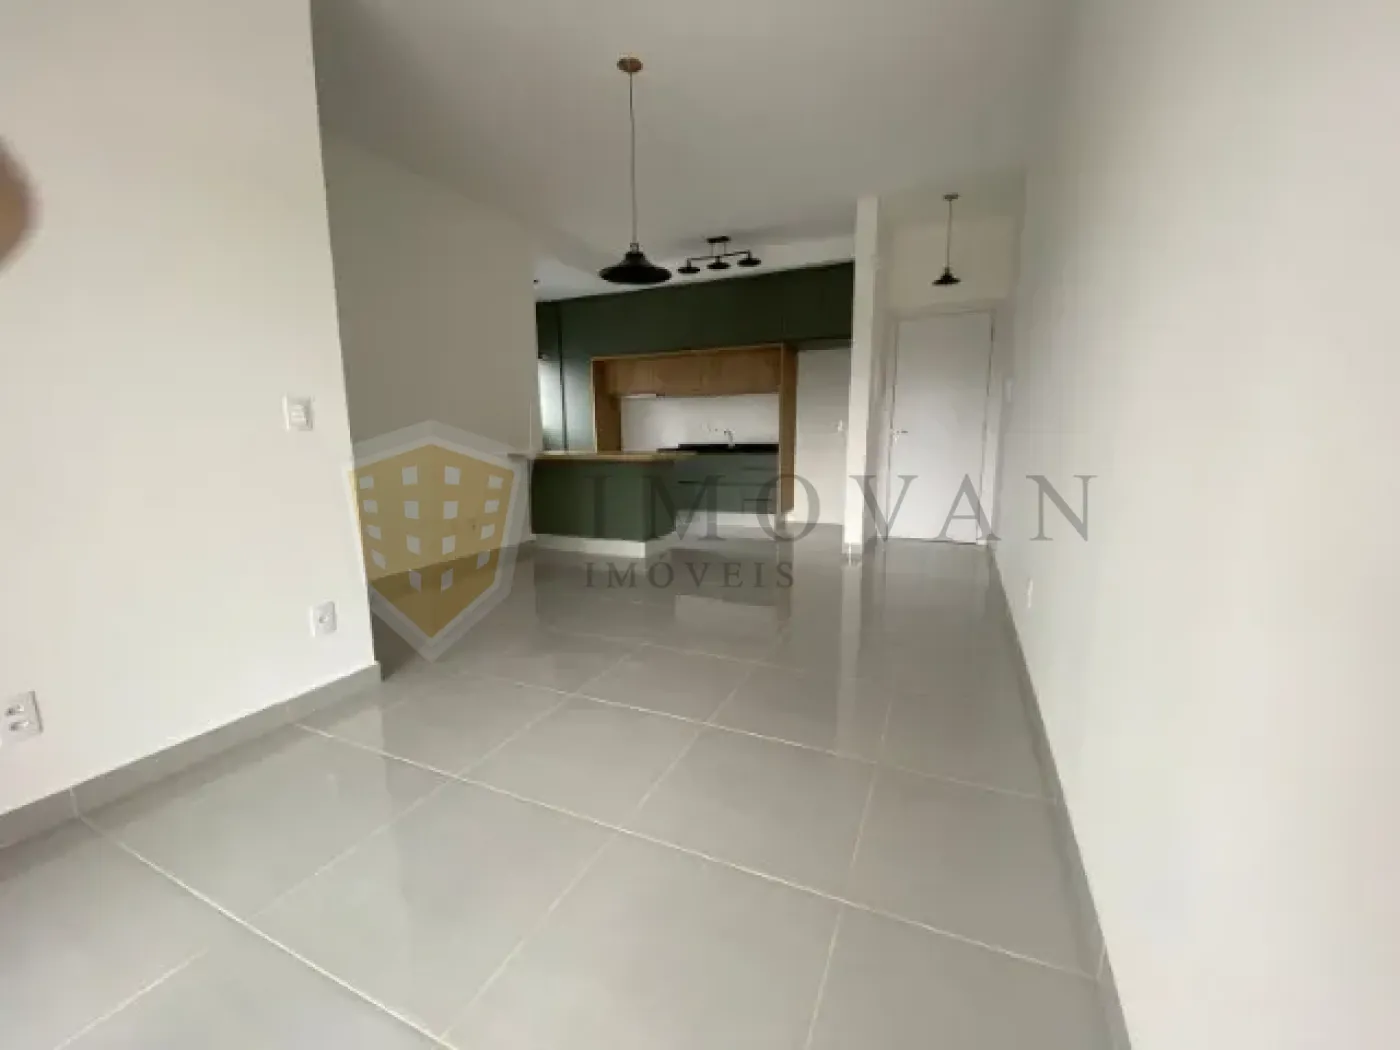 Comprar Apartamento / Padrão em Ribeirão Preto R$ 330.000,00 - Foto 6